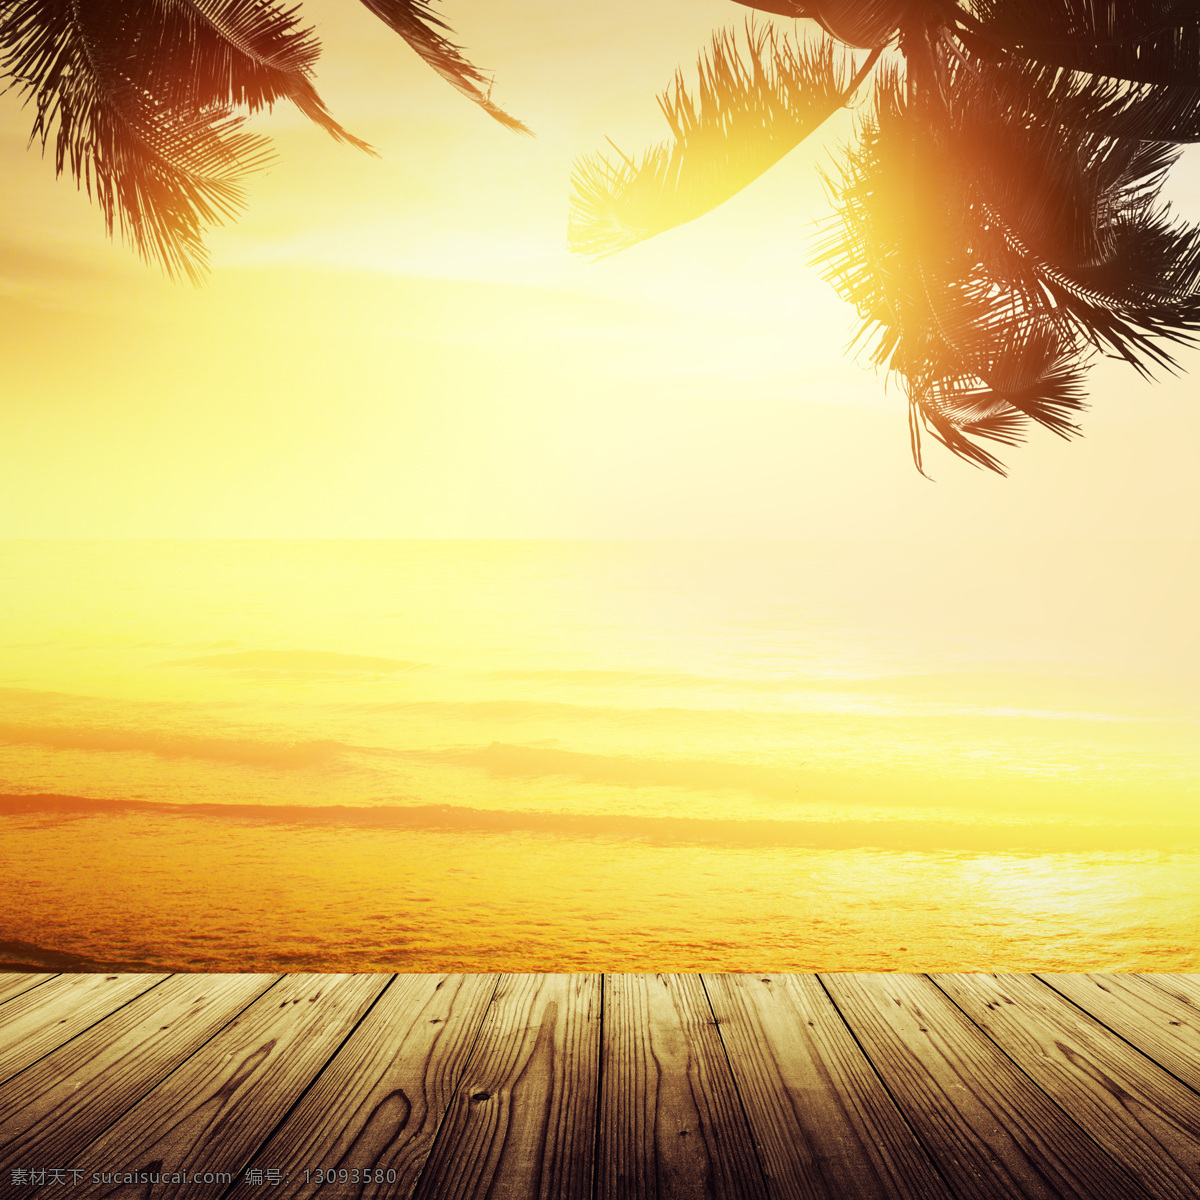 木板 阳光 海边 风景 海边风景 椰树 自然风景 木板背景 海水 海洋海边 大海图片 风景图片